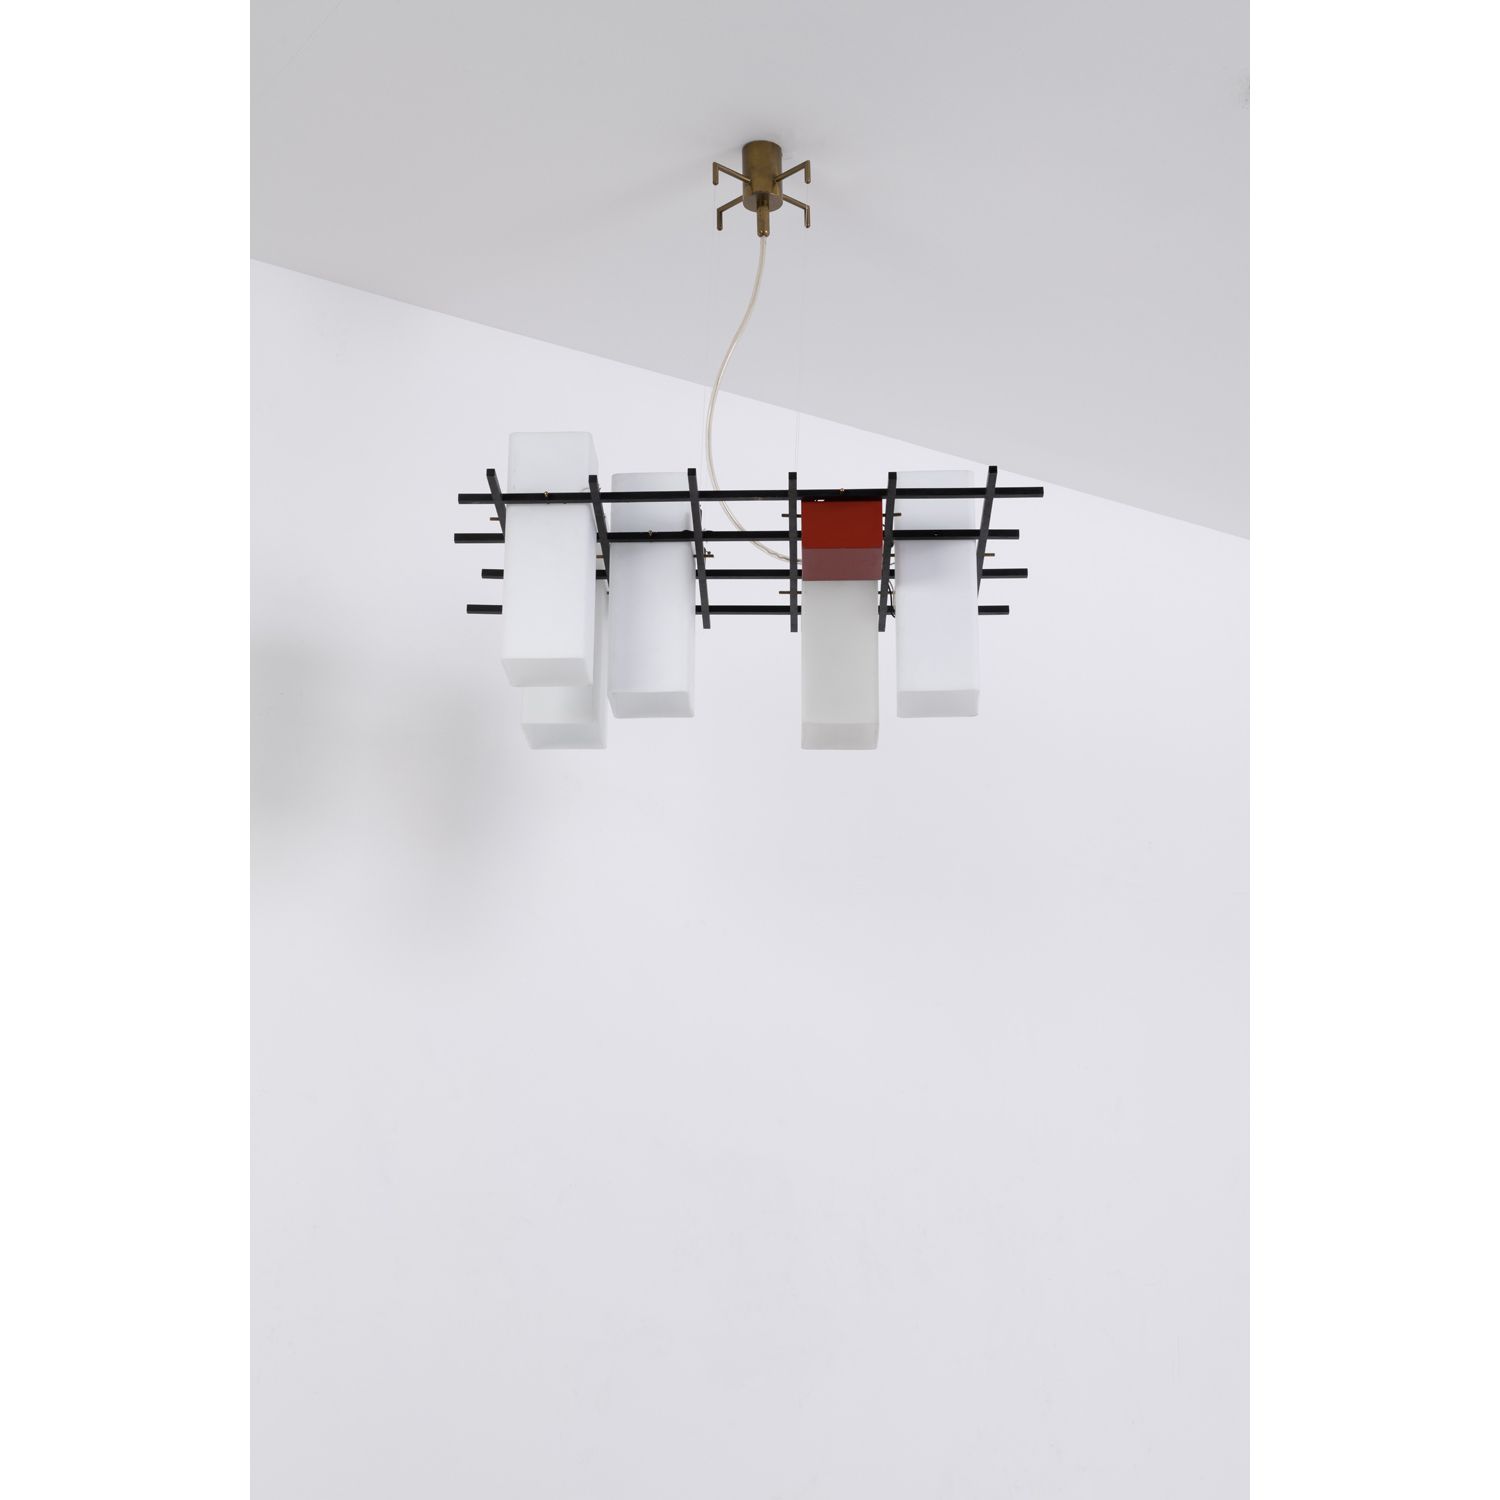 Null 安吉洛-莱利(1915-1987)

悬吊灯

漆面金属、黄铜和不透明玻璃

绘画版

1958年左右创建的模型

高80×宽72×深50厘米

参考&hellip;